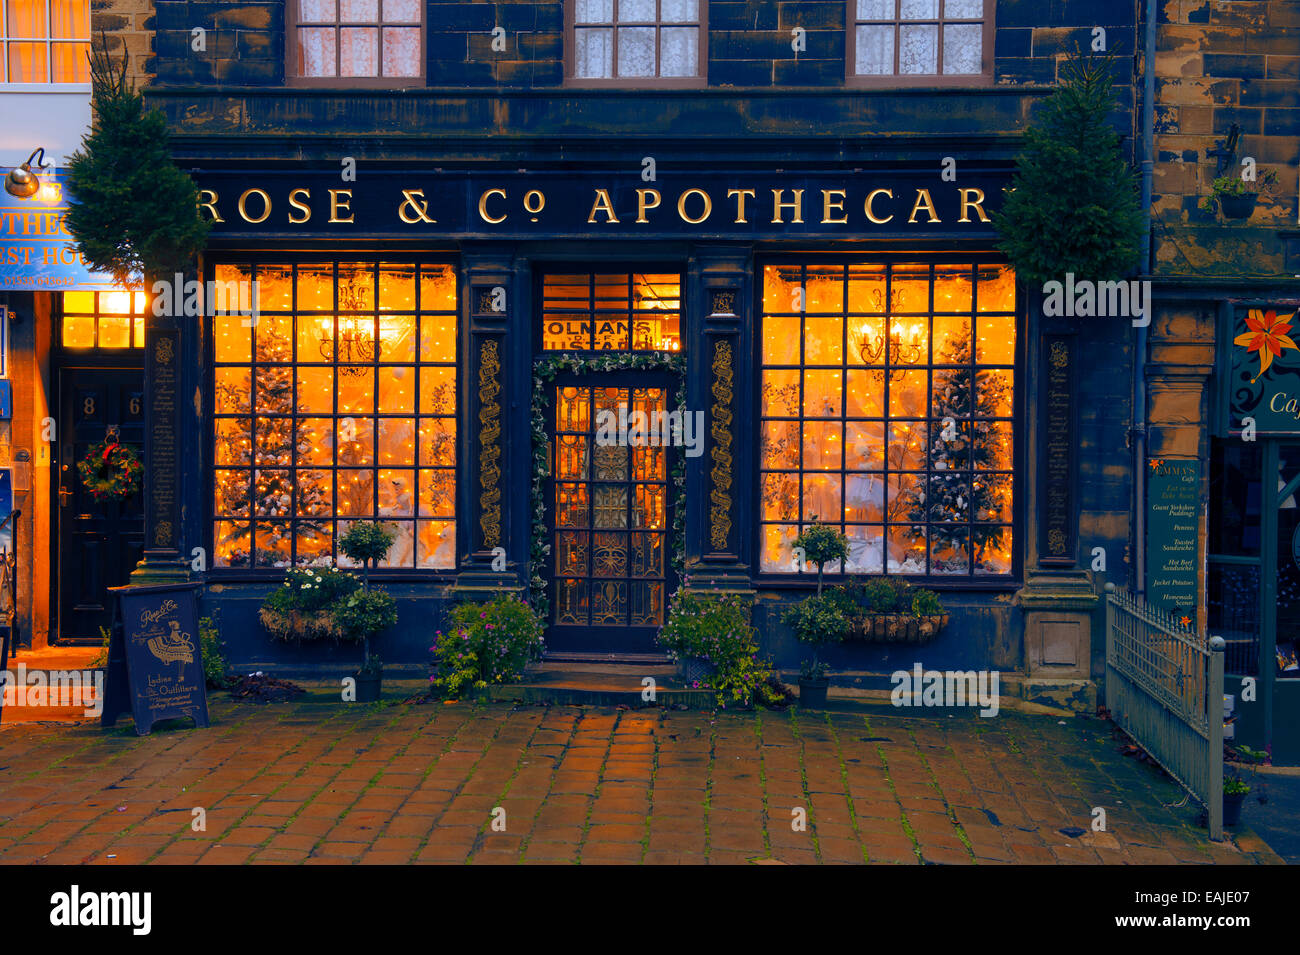 Rose und co Apotheker Schaufenster display Haworth Hauptstraße zu Weihnachten Stockfoto